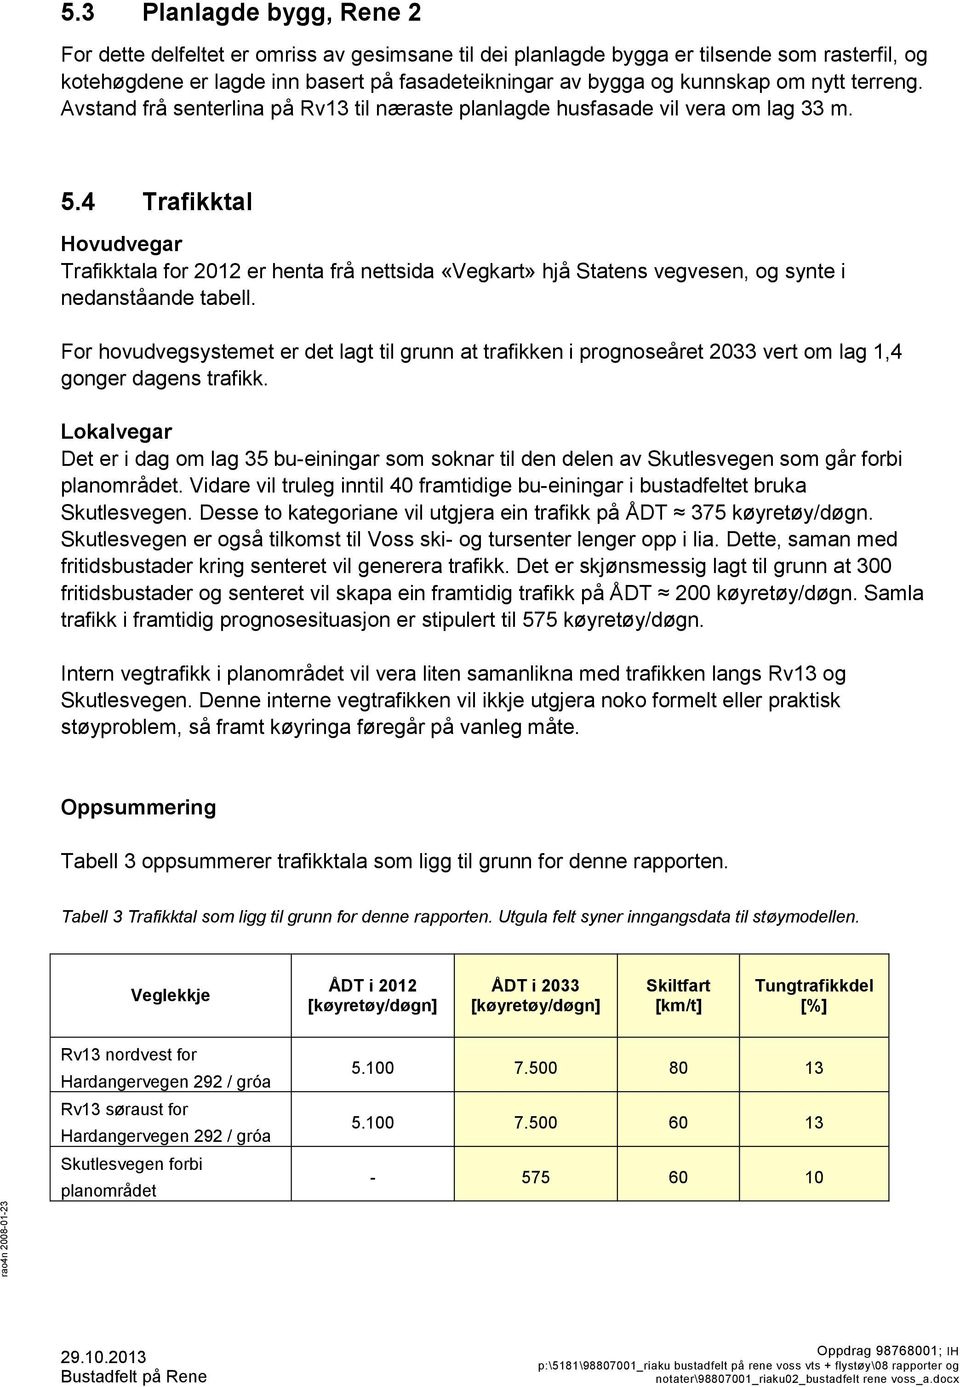 4 Trafikktal Hovudvegar Trafikktala for 2012 er henta frå nettsida «Vegkart» hjå Statens vegvesen, og synte i nedanståande tabell.